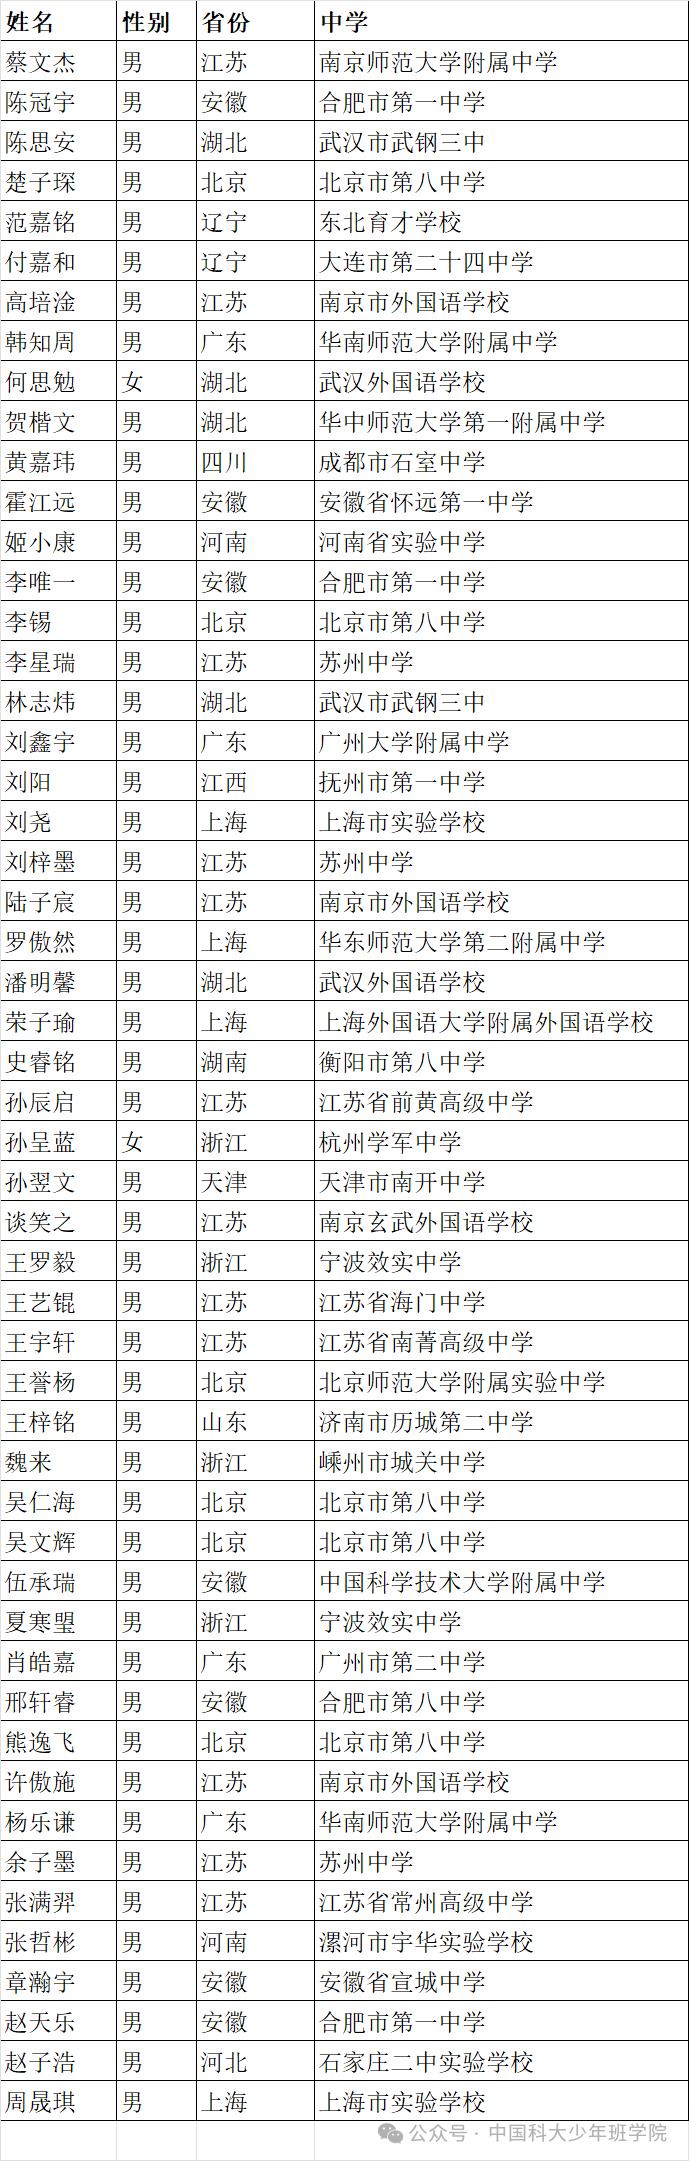 中科大少年班录取名单公示，上海12岁“小孩哥”在列